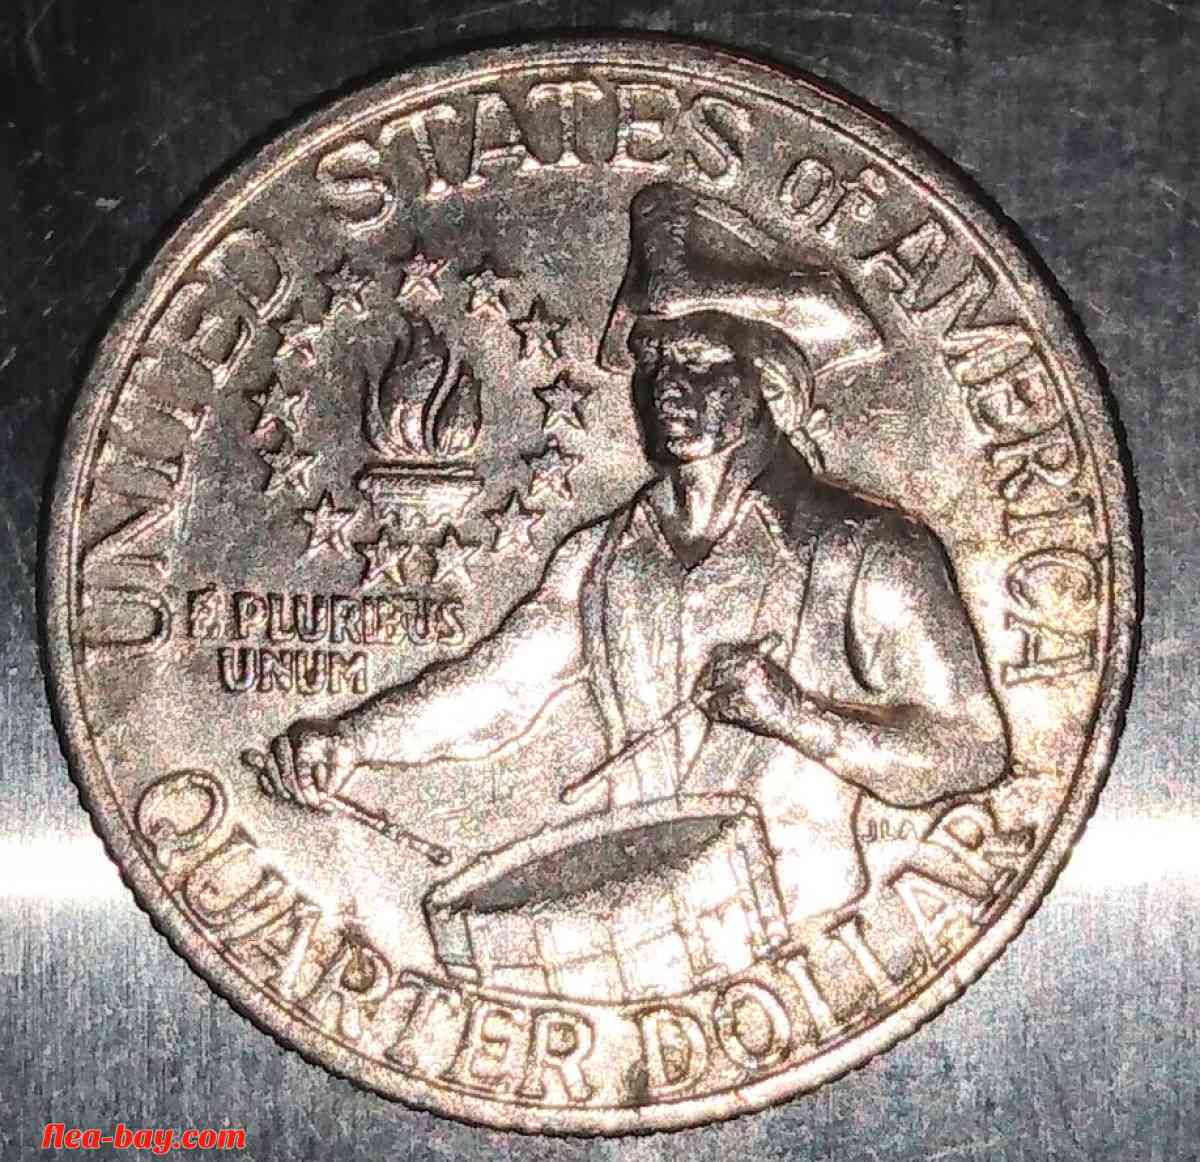 Transitional Bicentennial quarter dollar! 1776-1976/no mint